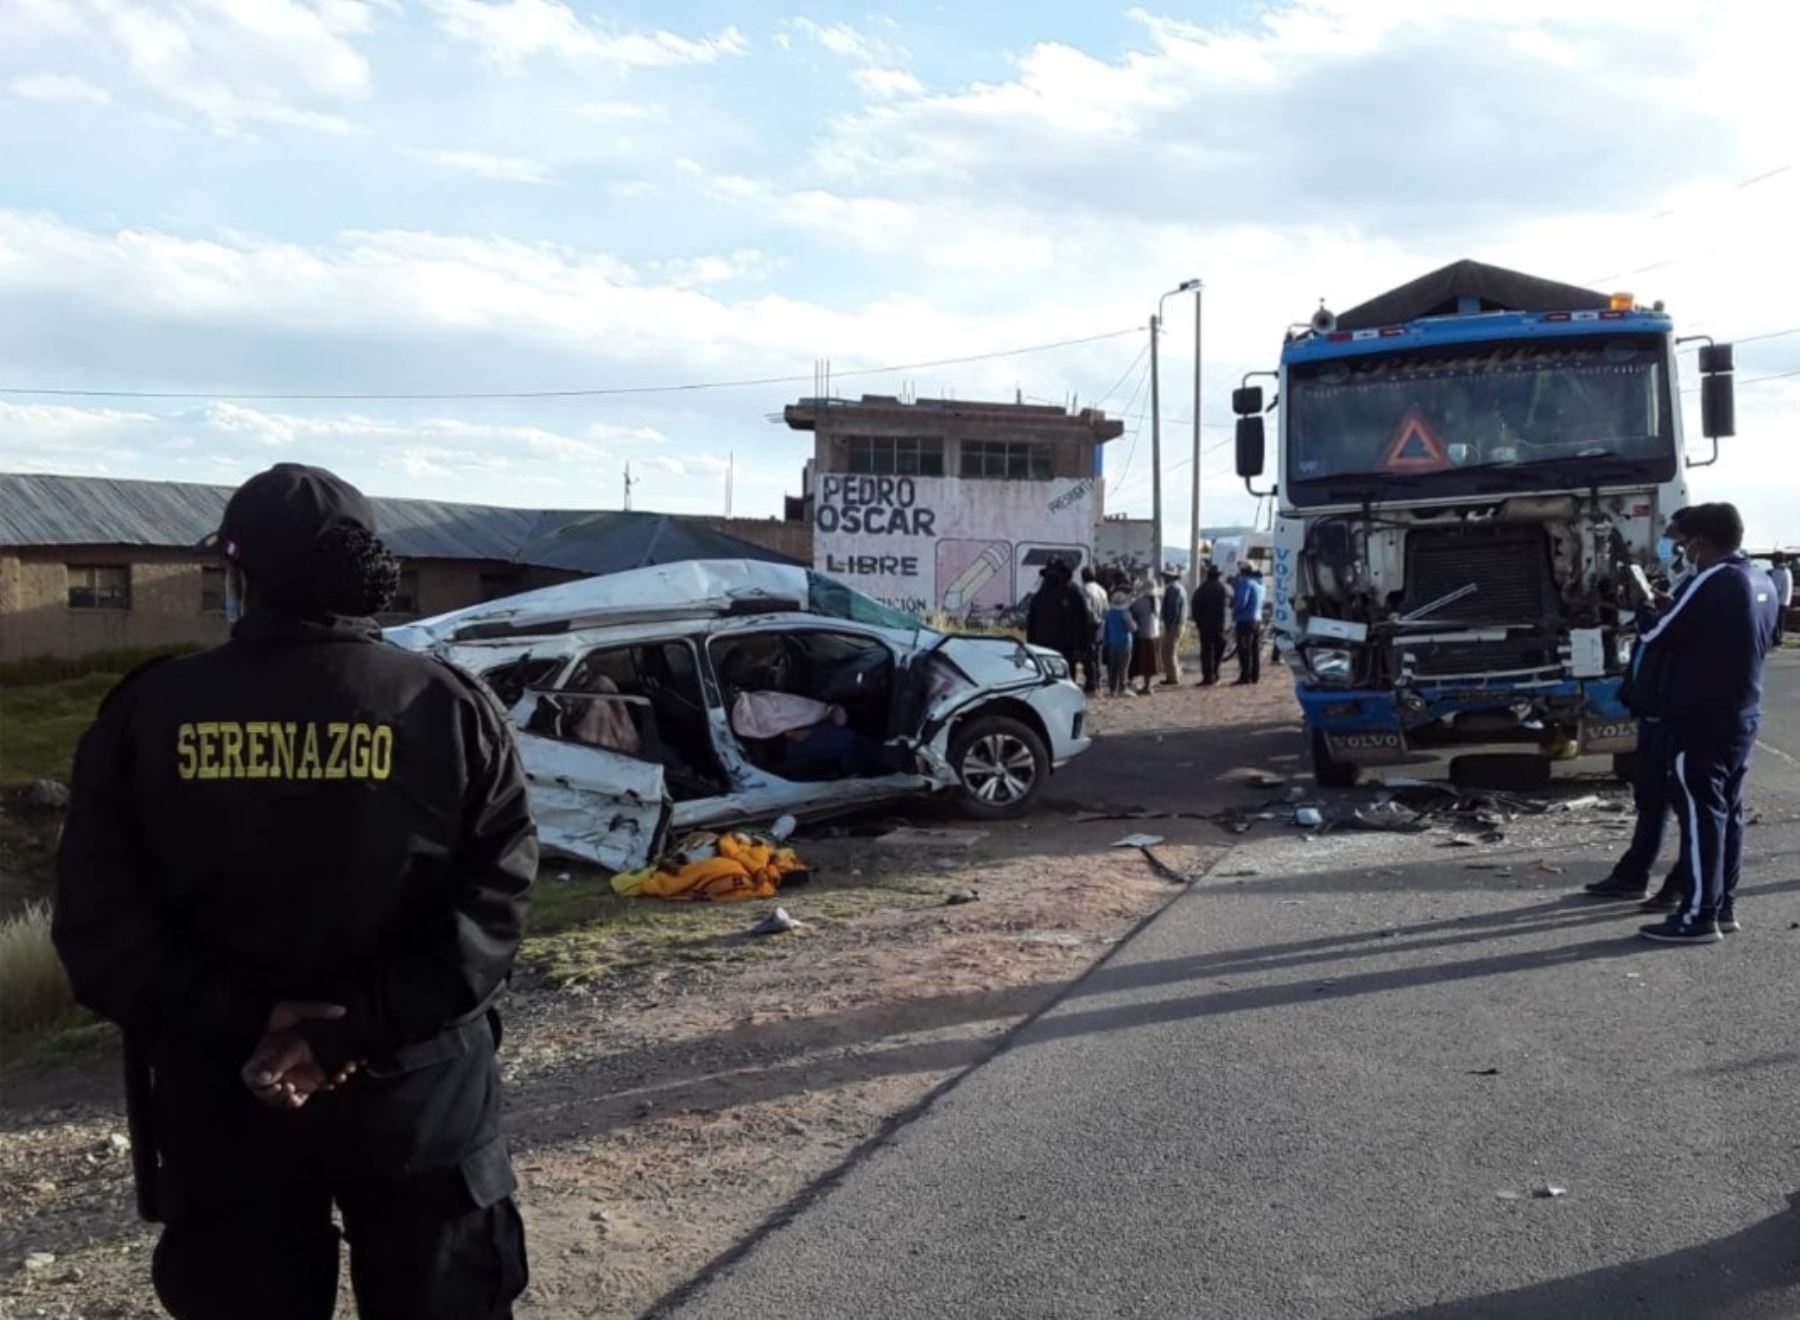 El accidente ocurrido en mayo en la vía Juliaca-Huancané, en Puno, fue uno de los más graves en las carreteras de Perú. El siniestro dejó siete muertos. Foto: ANDINA/difusión.